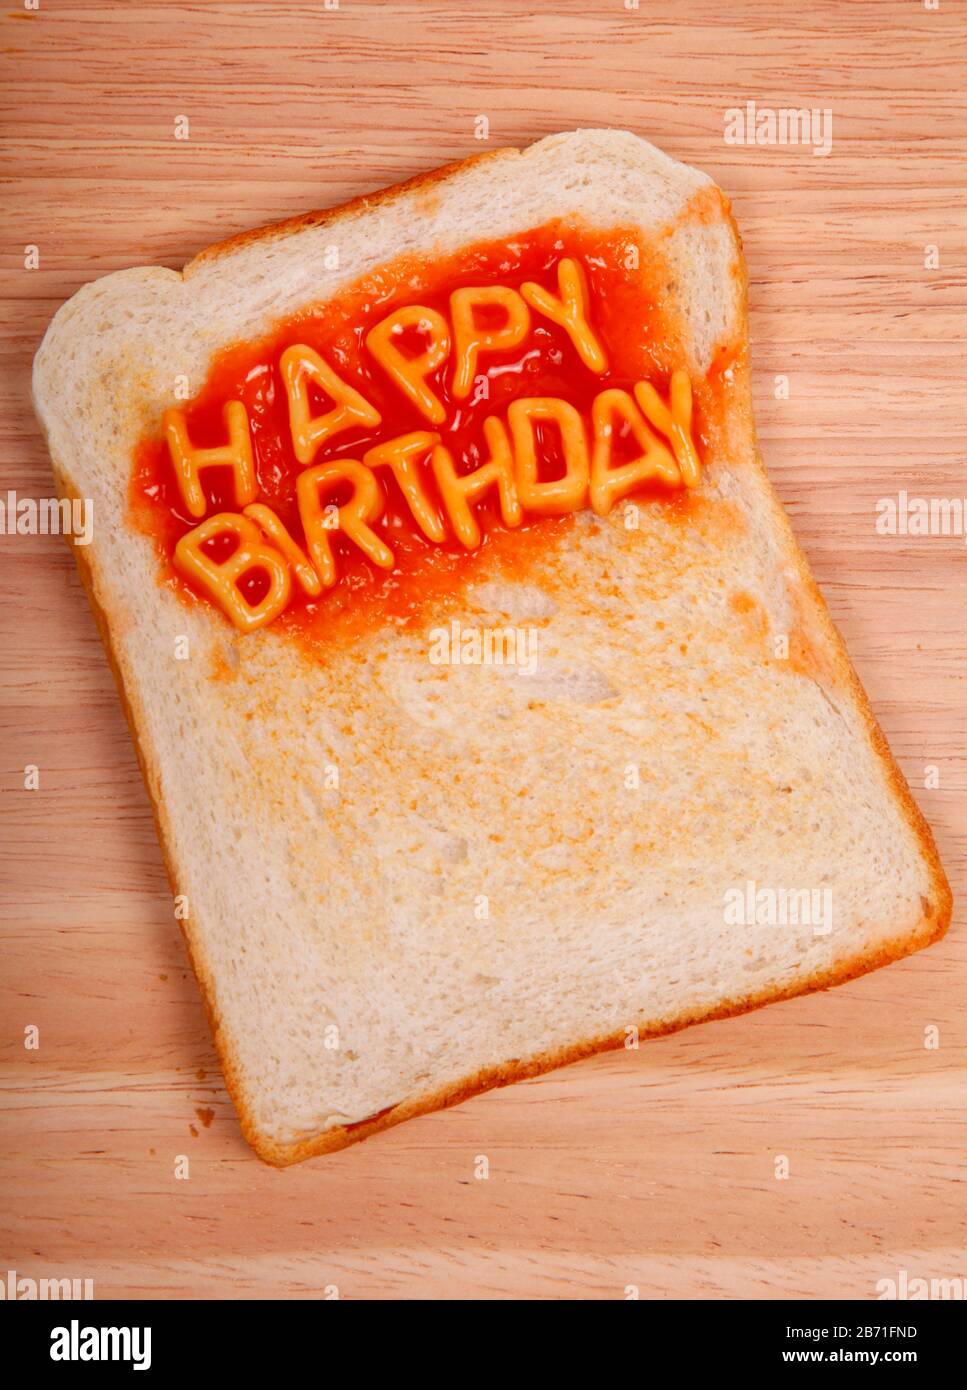 Les mots Happy Birthday sont énoncés sur une tranche de pain grillé avec des spaghetti de l'alphabet Banque D'Images